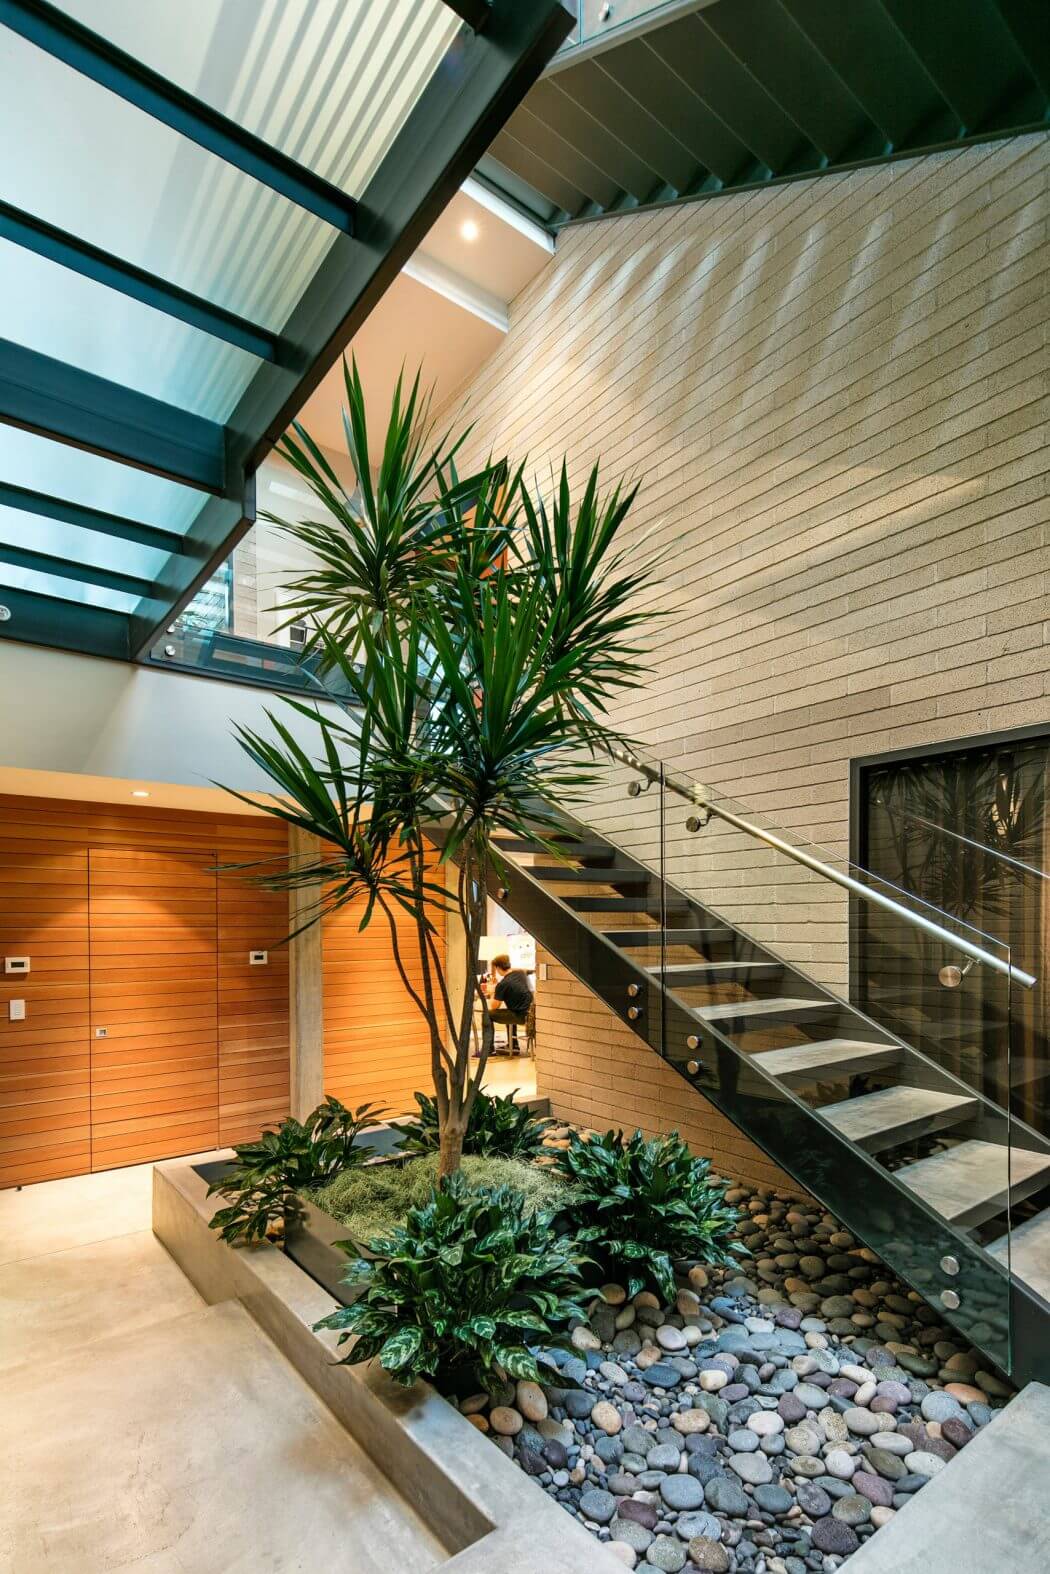 escalier beton design verre cour intérieure verdure